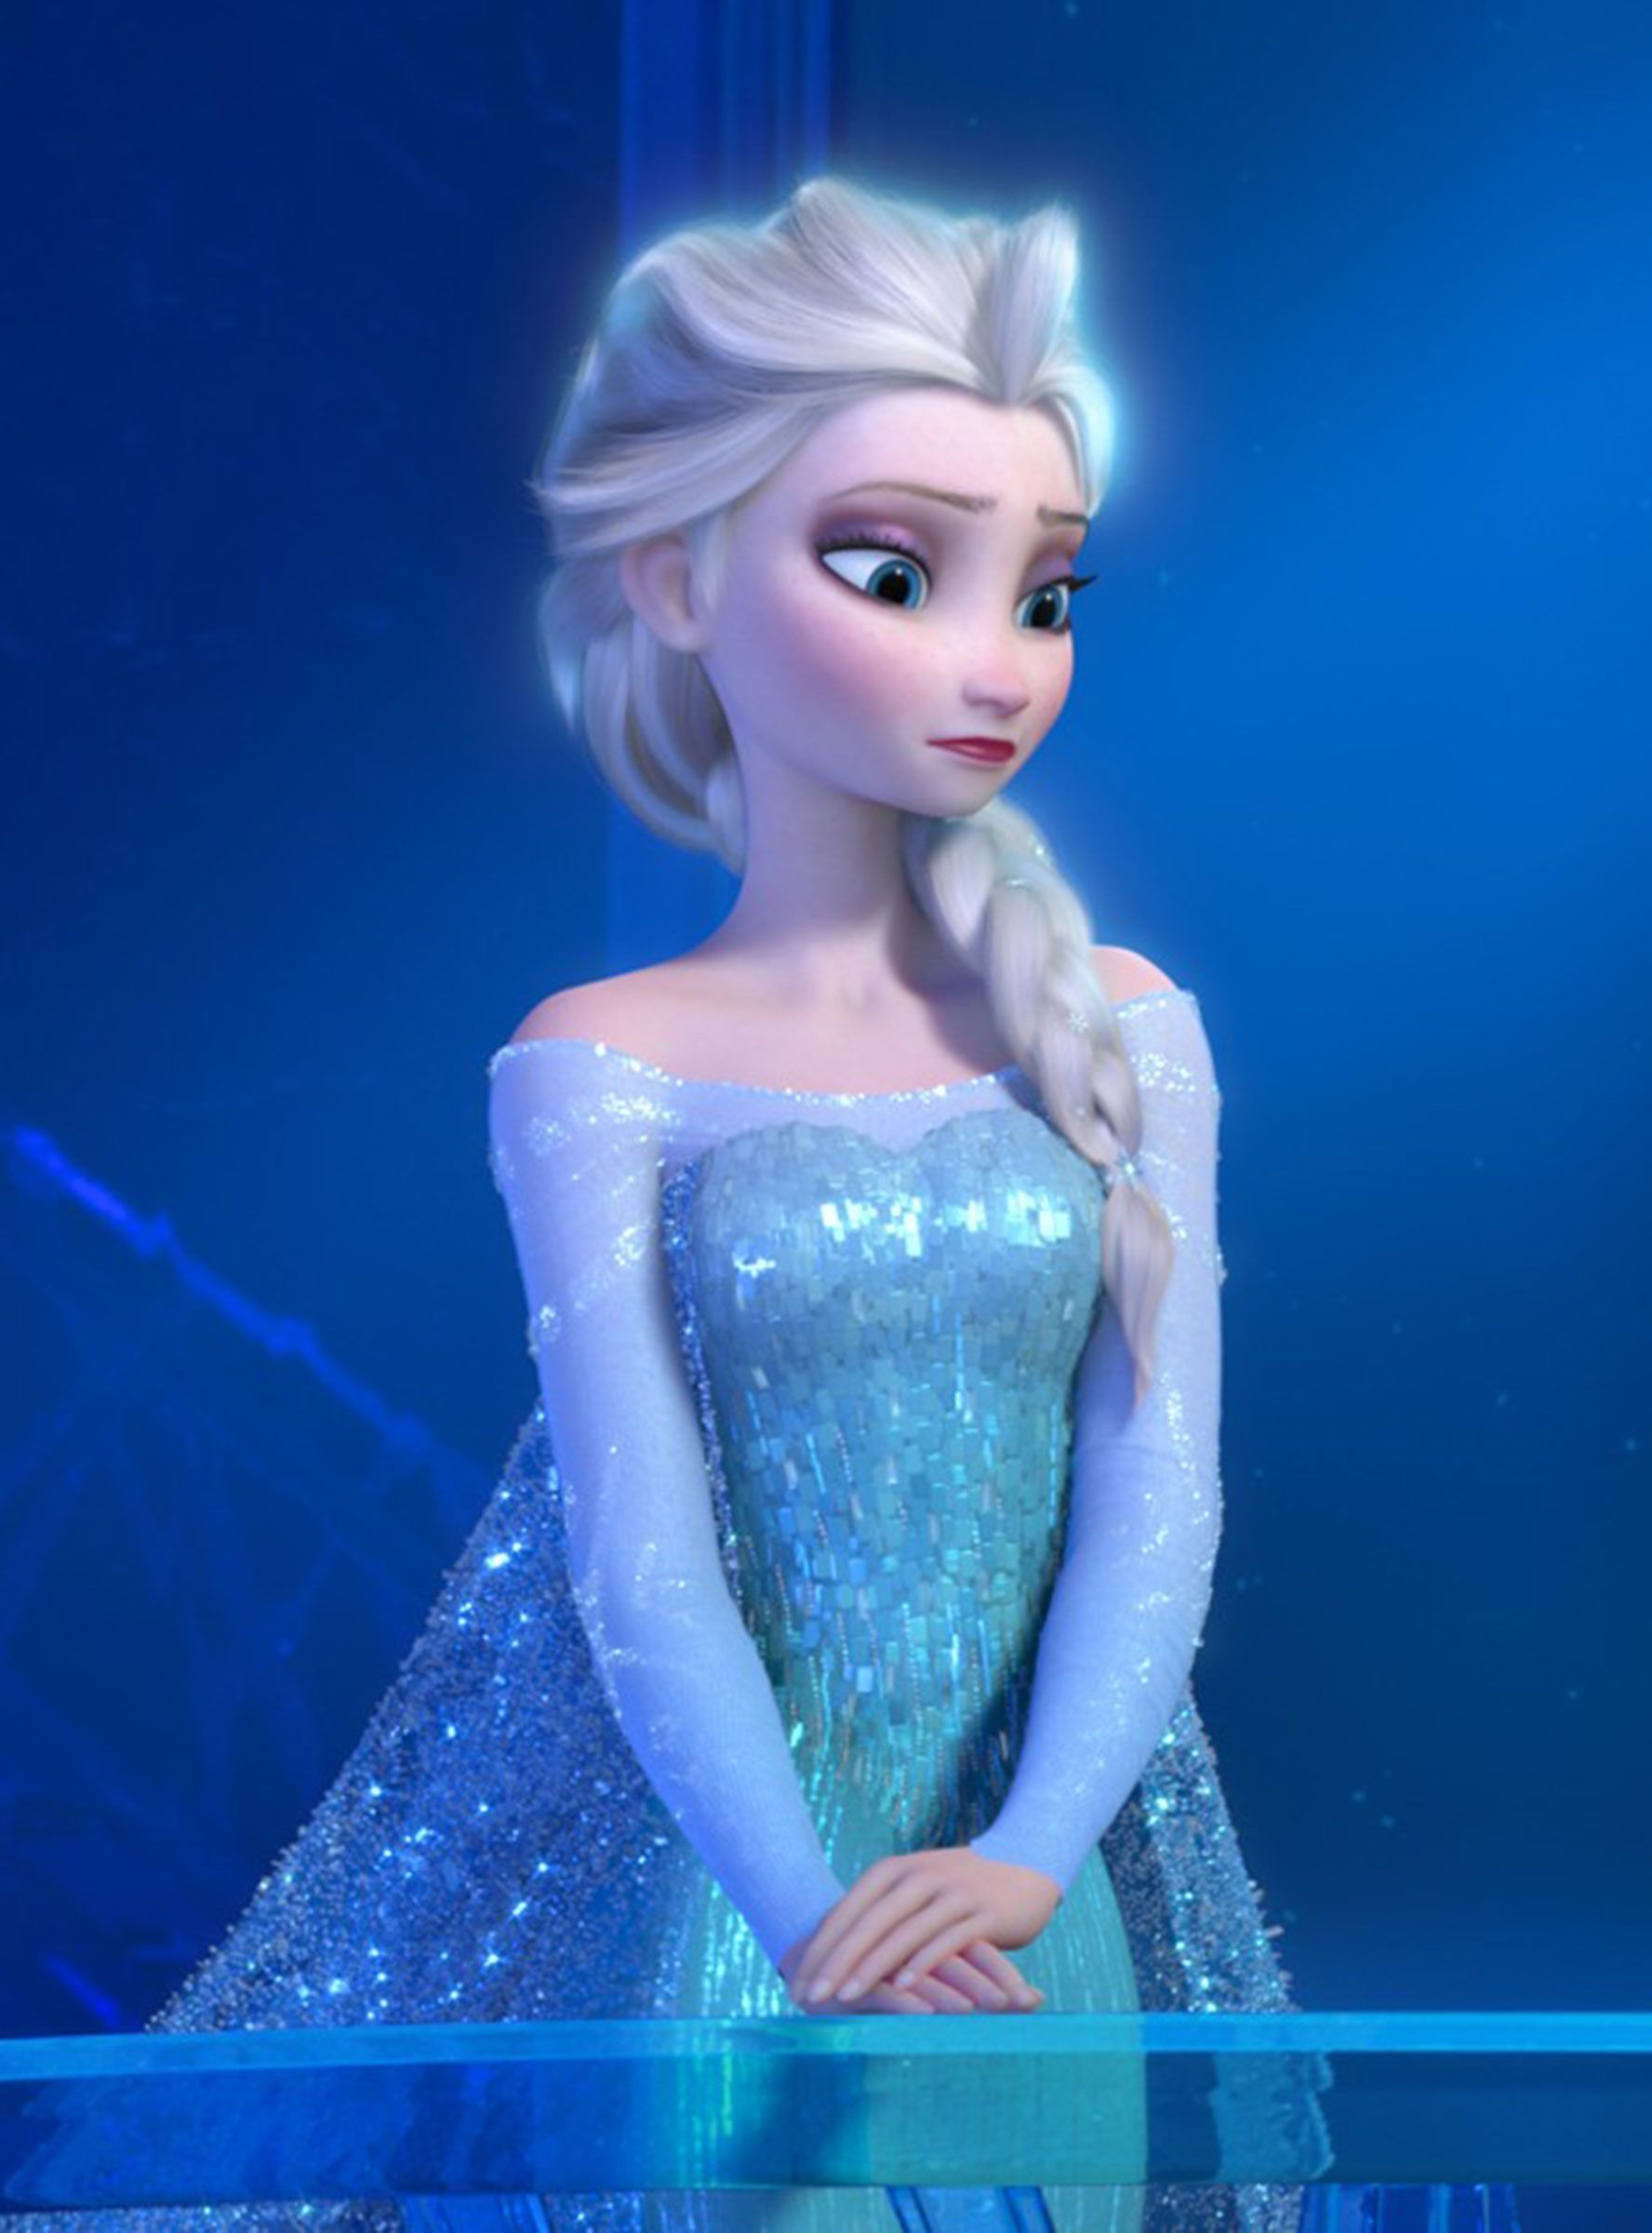 Elsa aesthetic Wallpaper Download